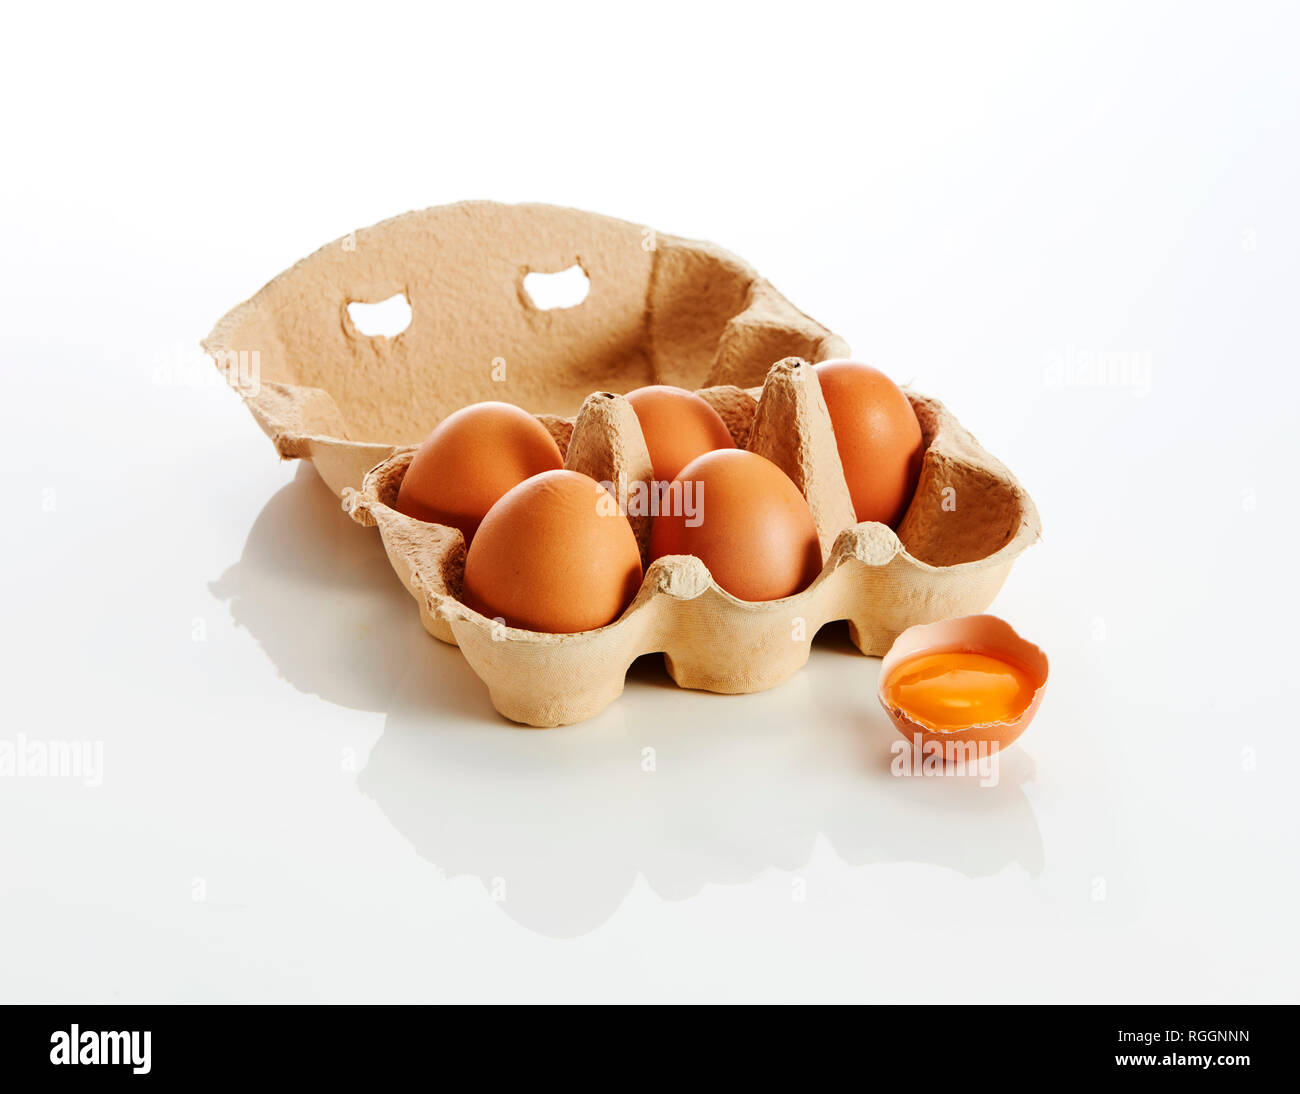 Scatola delle uova aperta immagini e fotografie stock ad alta risoluzione -  Alamy